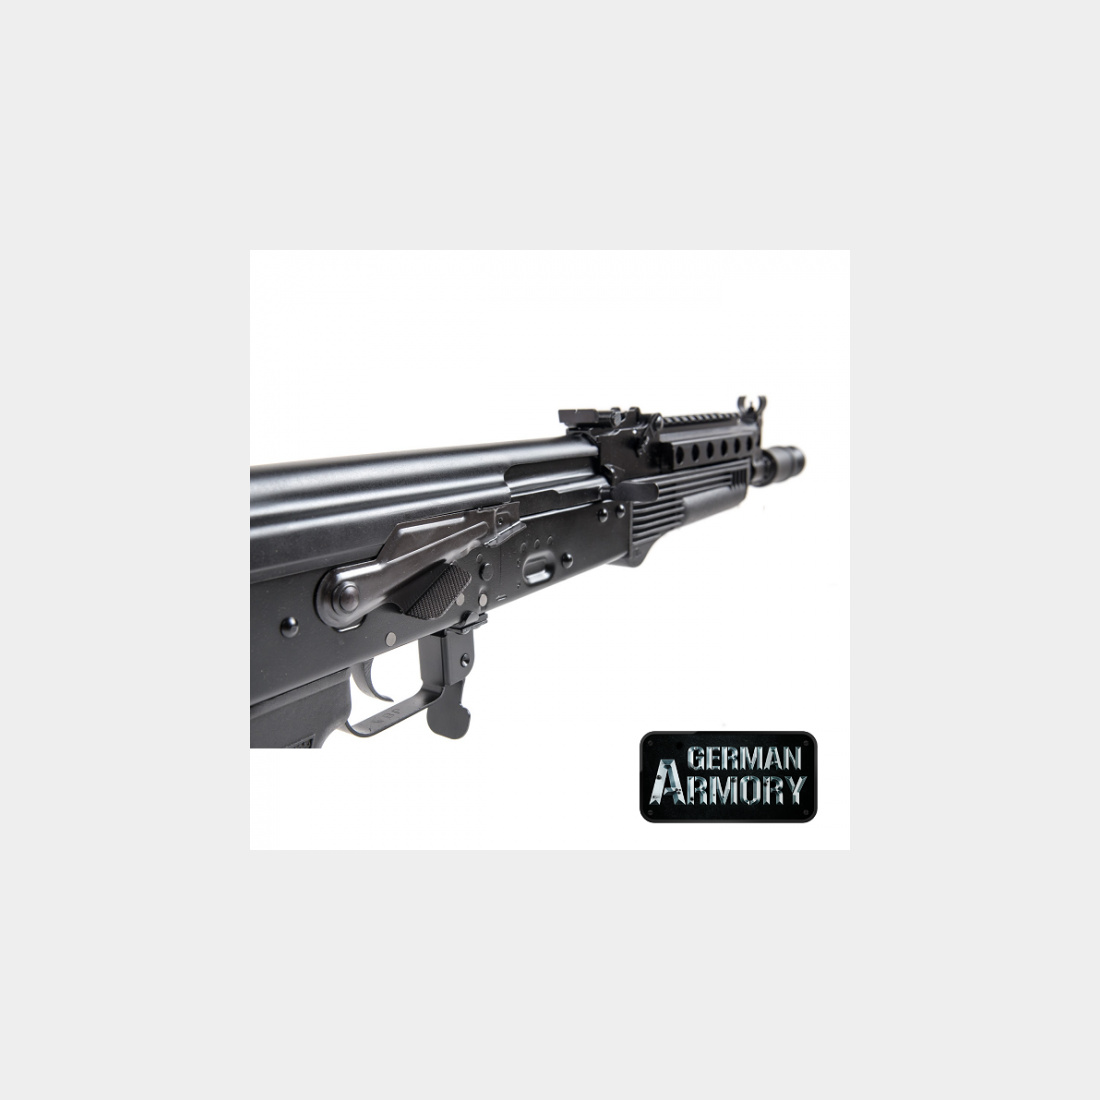 WBP erweiterter Sicherungshebel für AKM AK 47 74 Cugir Saiga Vepr SDM Zastava Arsenal Tuning